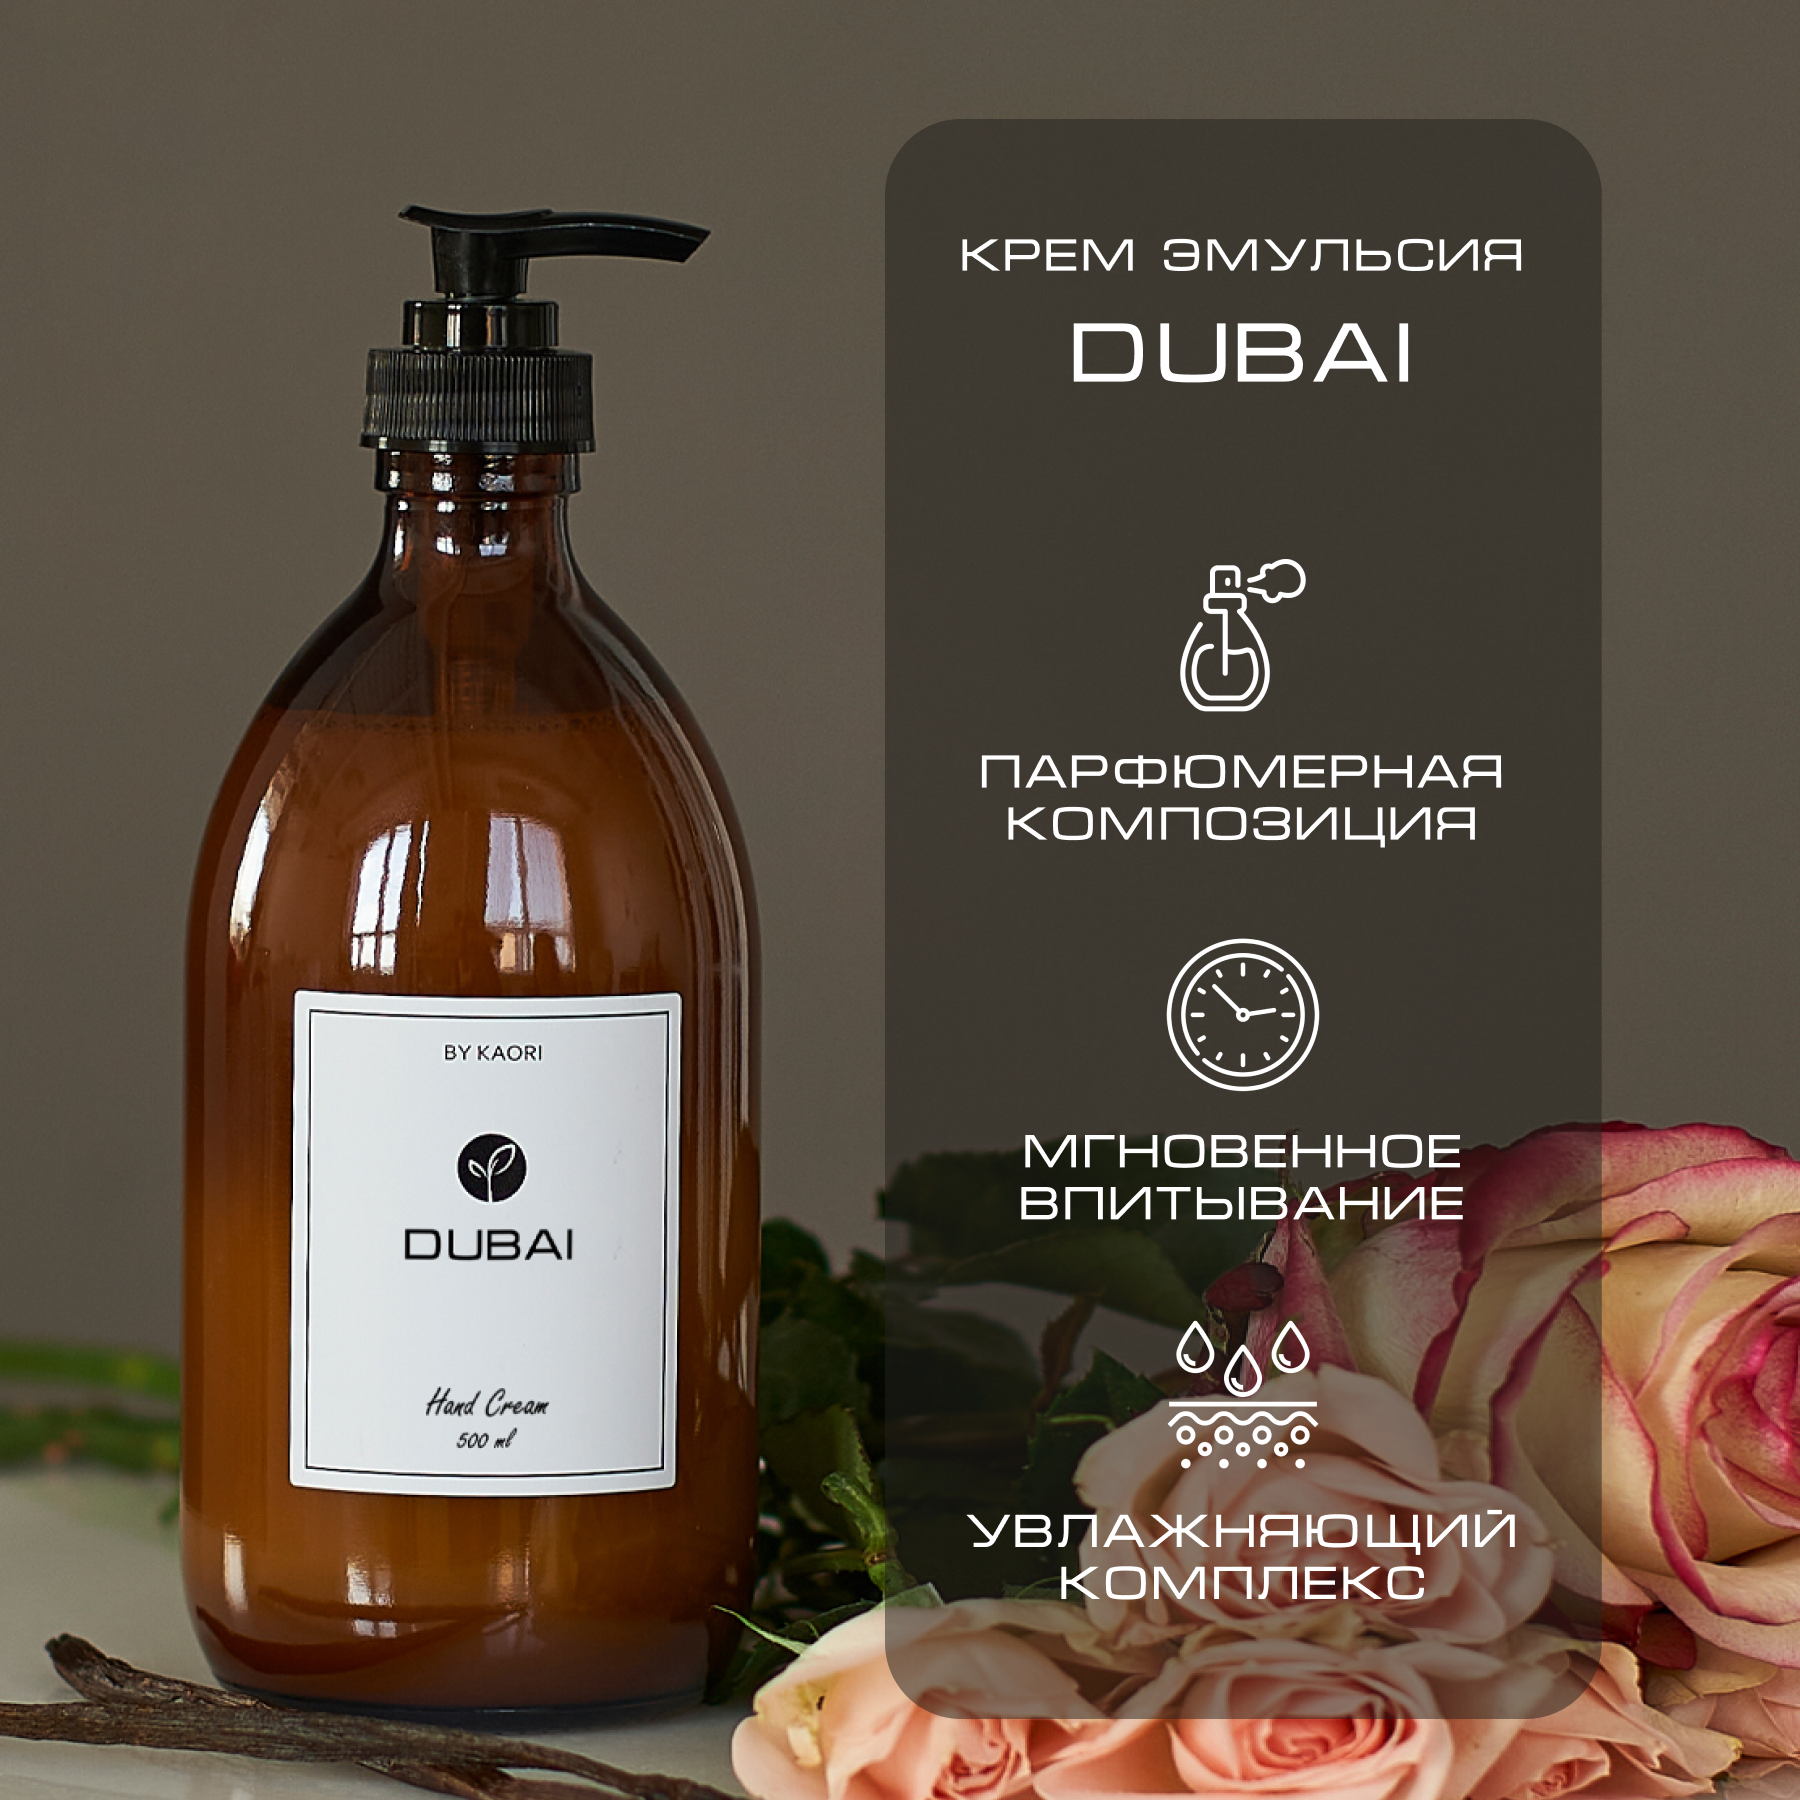 Крем эмульсия для рук By Kaori крем увлажняющий парфюмированный аромат Dubai 500 мл крем эмульсия для рук by kaori крем увлажняющий парфюмированный аромат dubai 250 мл